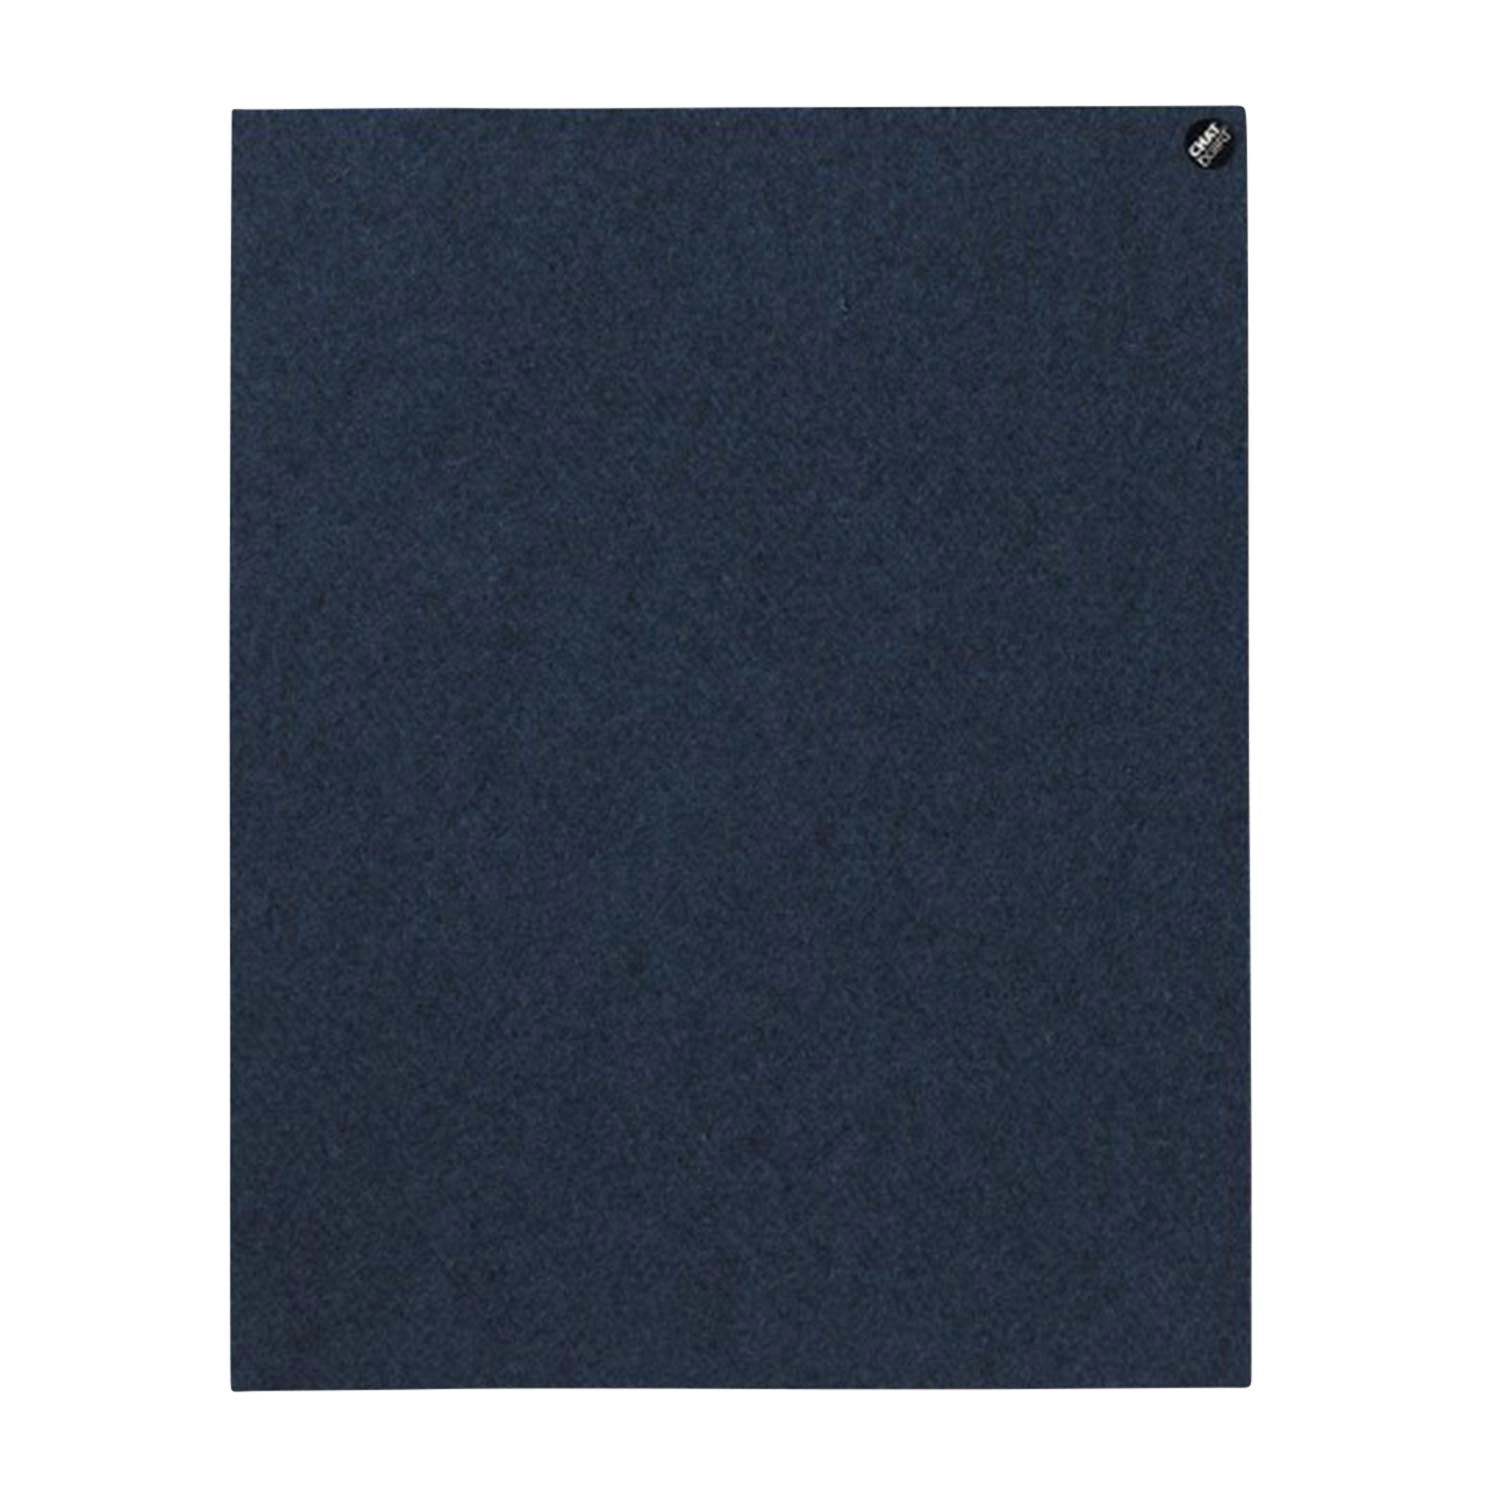 BuzziFelt Pinnwand, Grösse 90 x 70 cm, Ausrichtung vertikal, Buzzifelt (Filz) 60 light blue von Chat Board